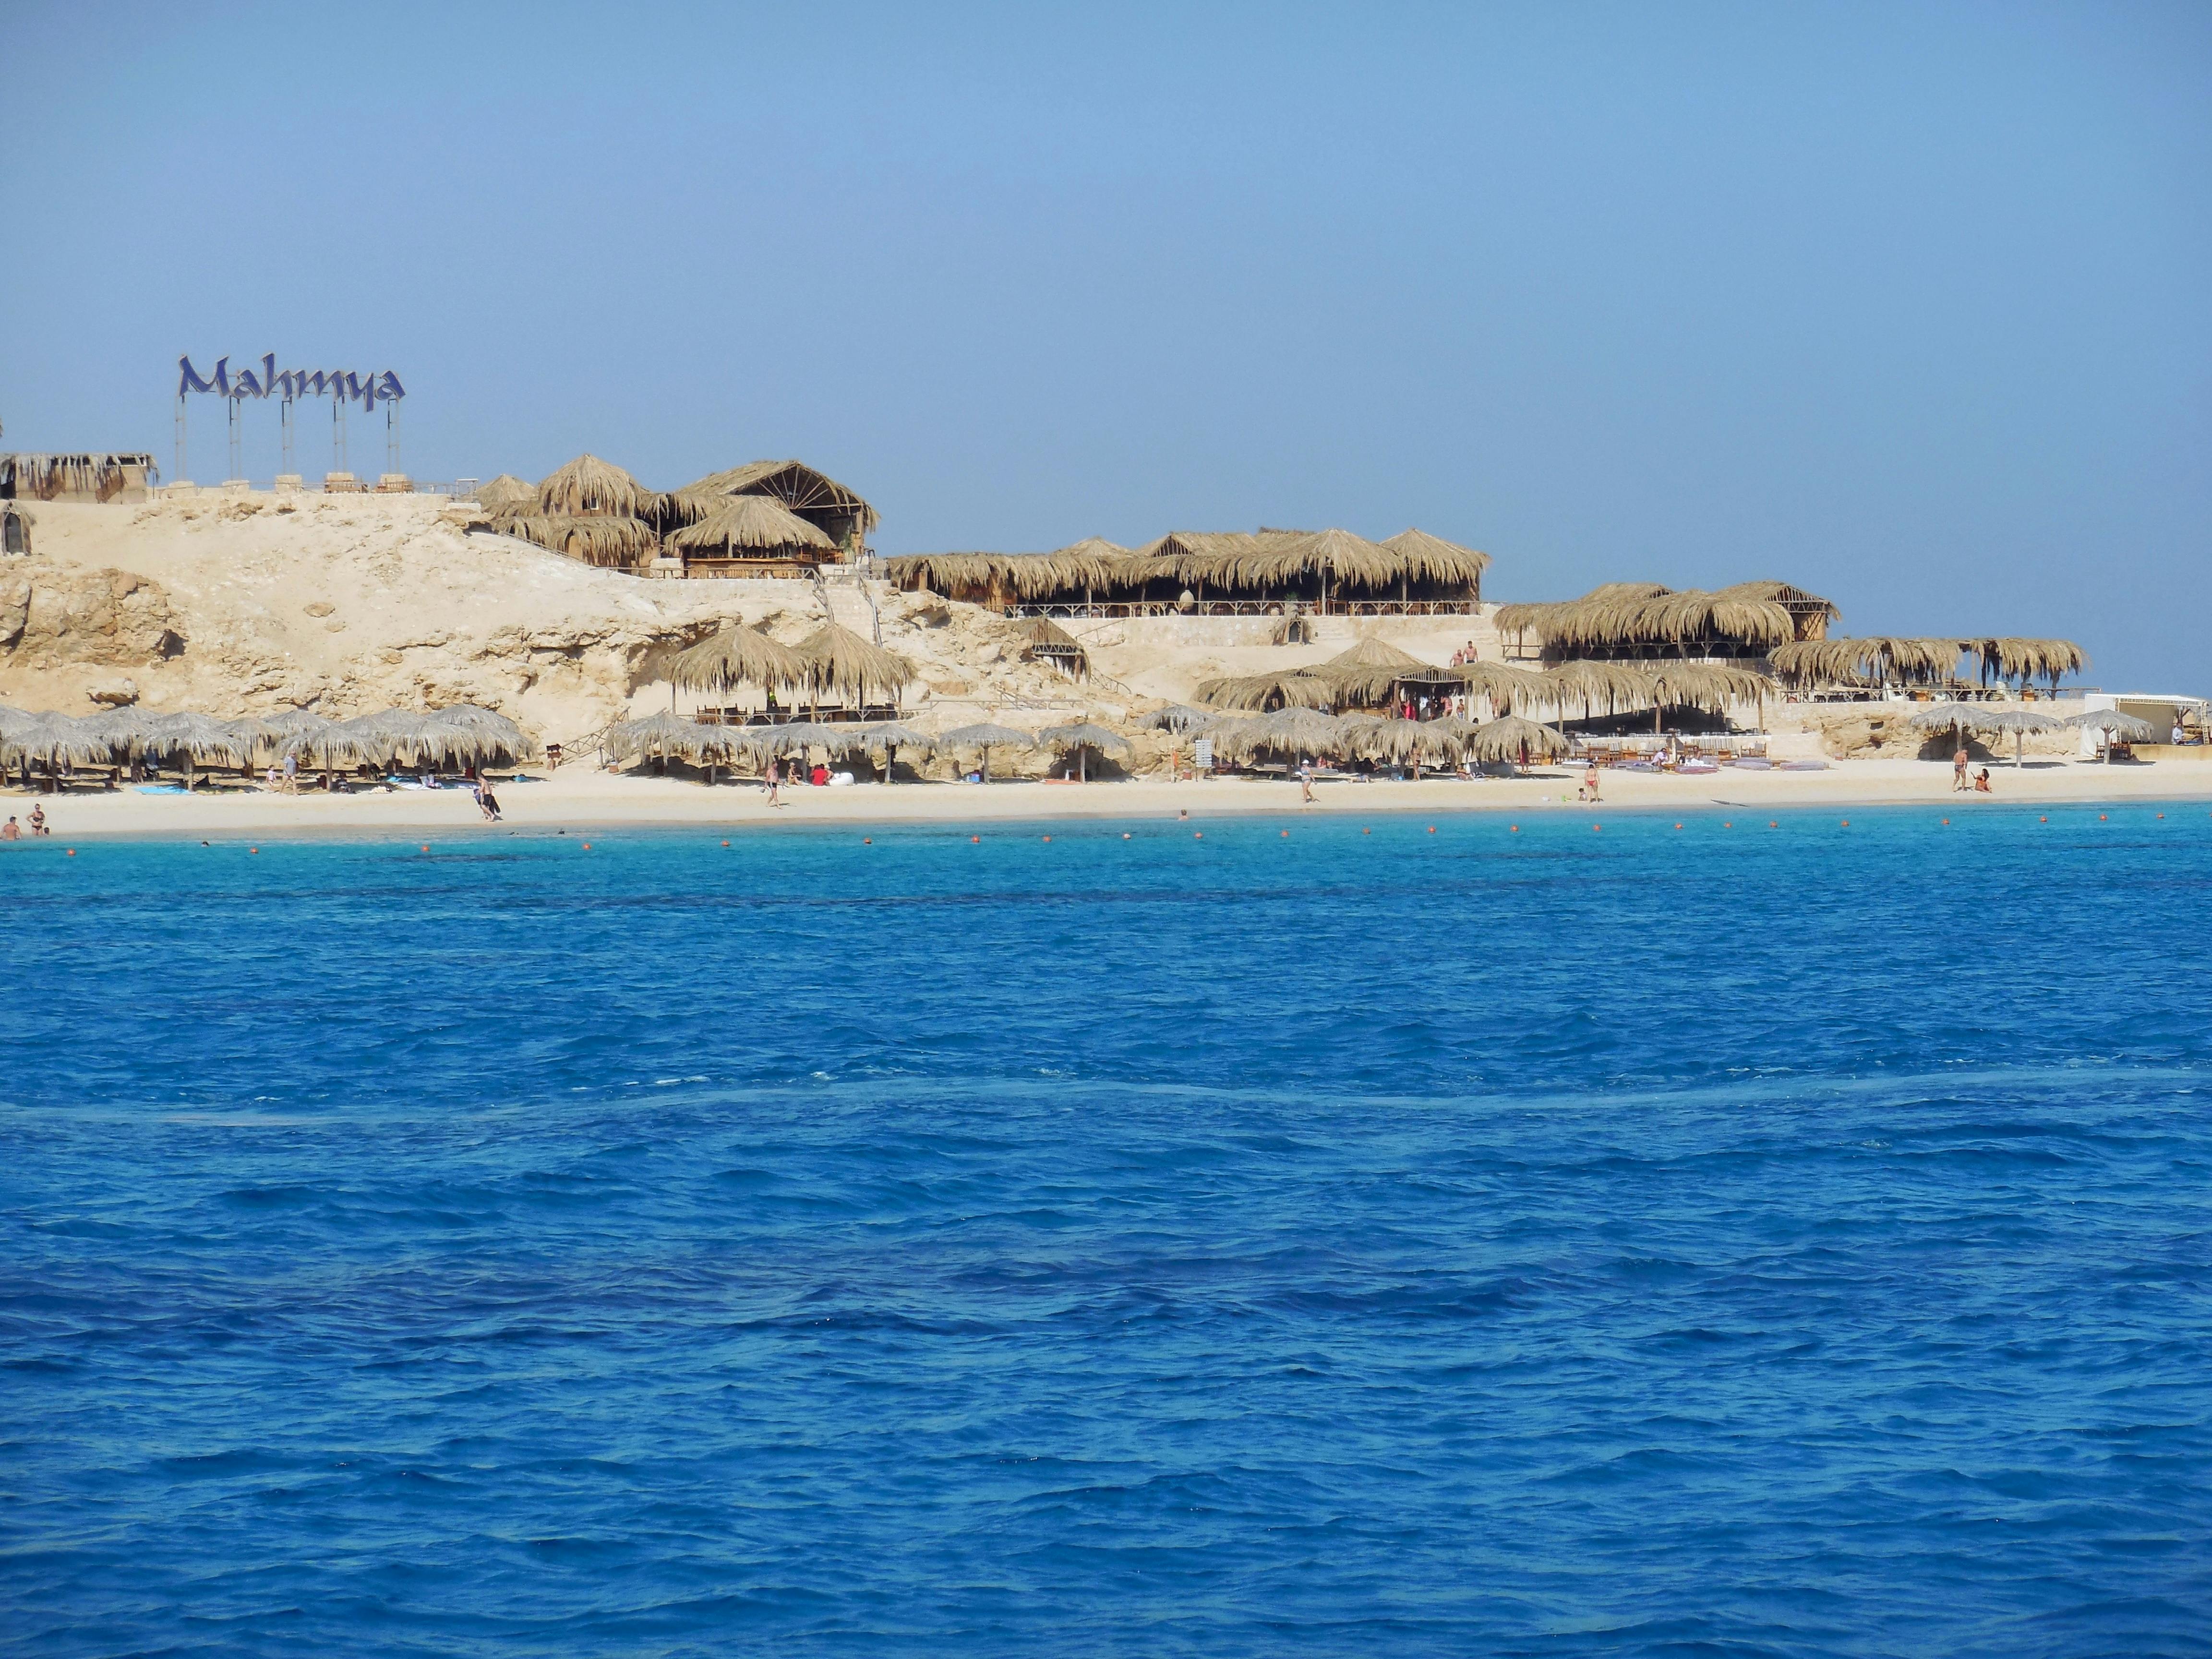 Mahmya Giftun Island koko päivän snorklausristeily ja auringonlasku Hurghadassa